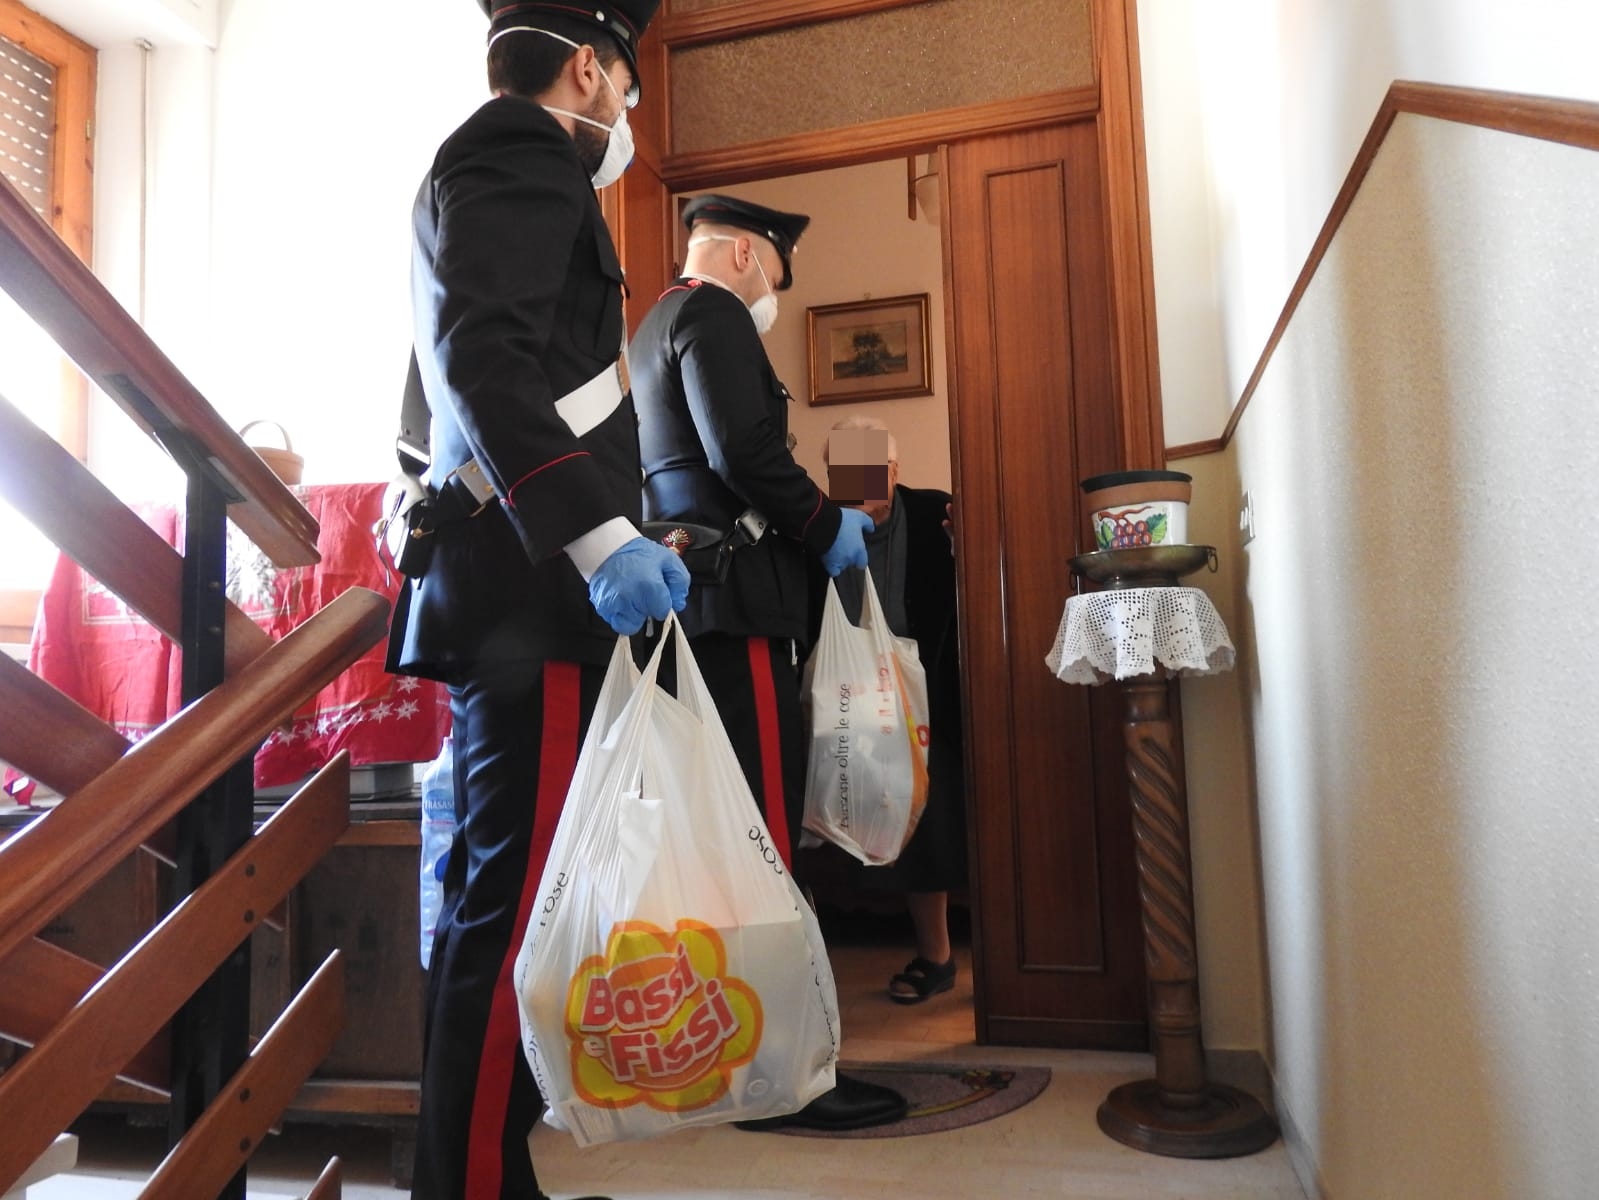 Anziana sola in casa senza scorte di cibo, i carabinieri le fanno e le portano la spesa